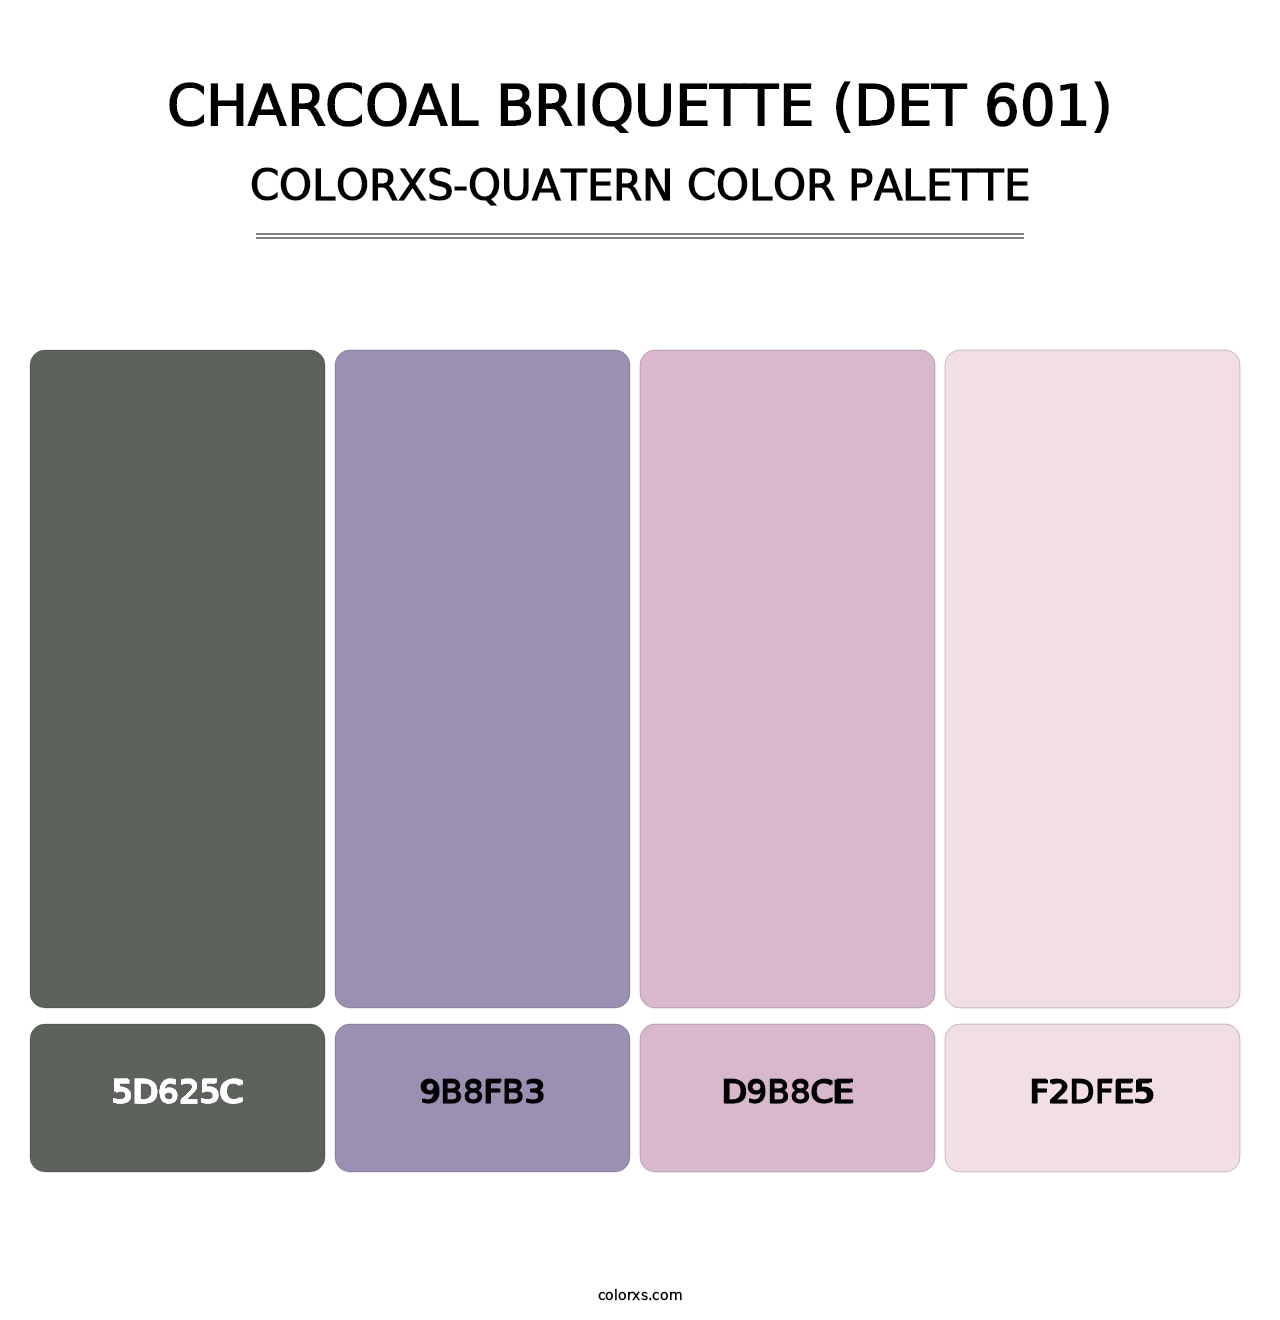 Charcoal Briquette (DET 601) - Colorxs Quatern Palette